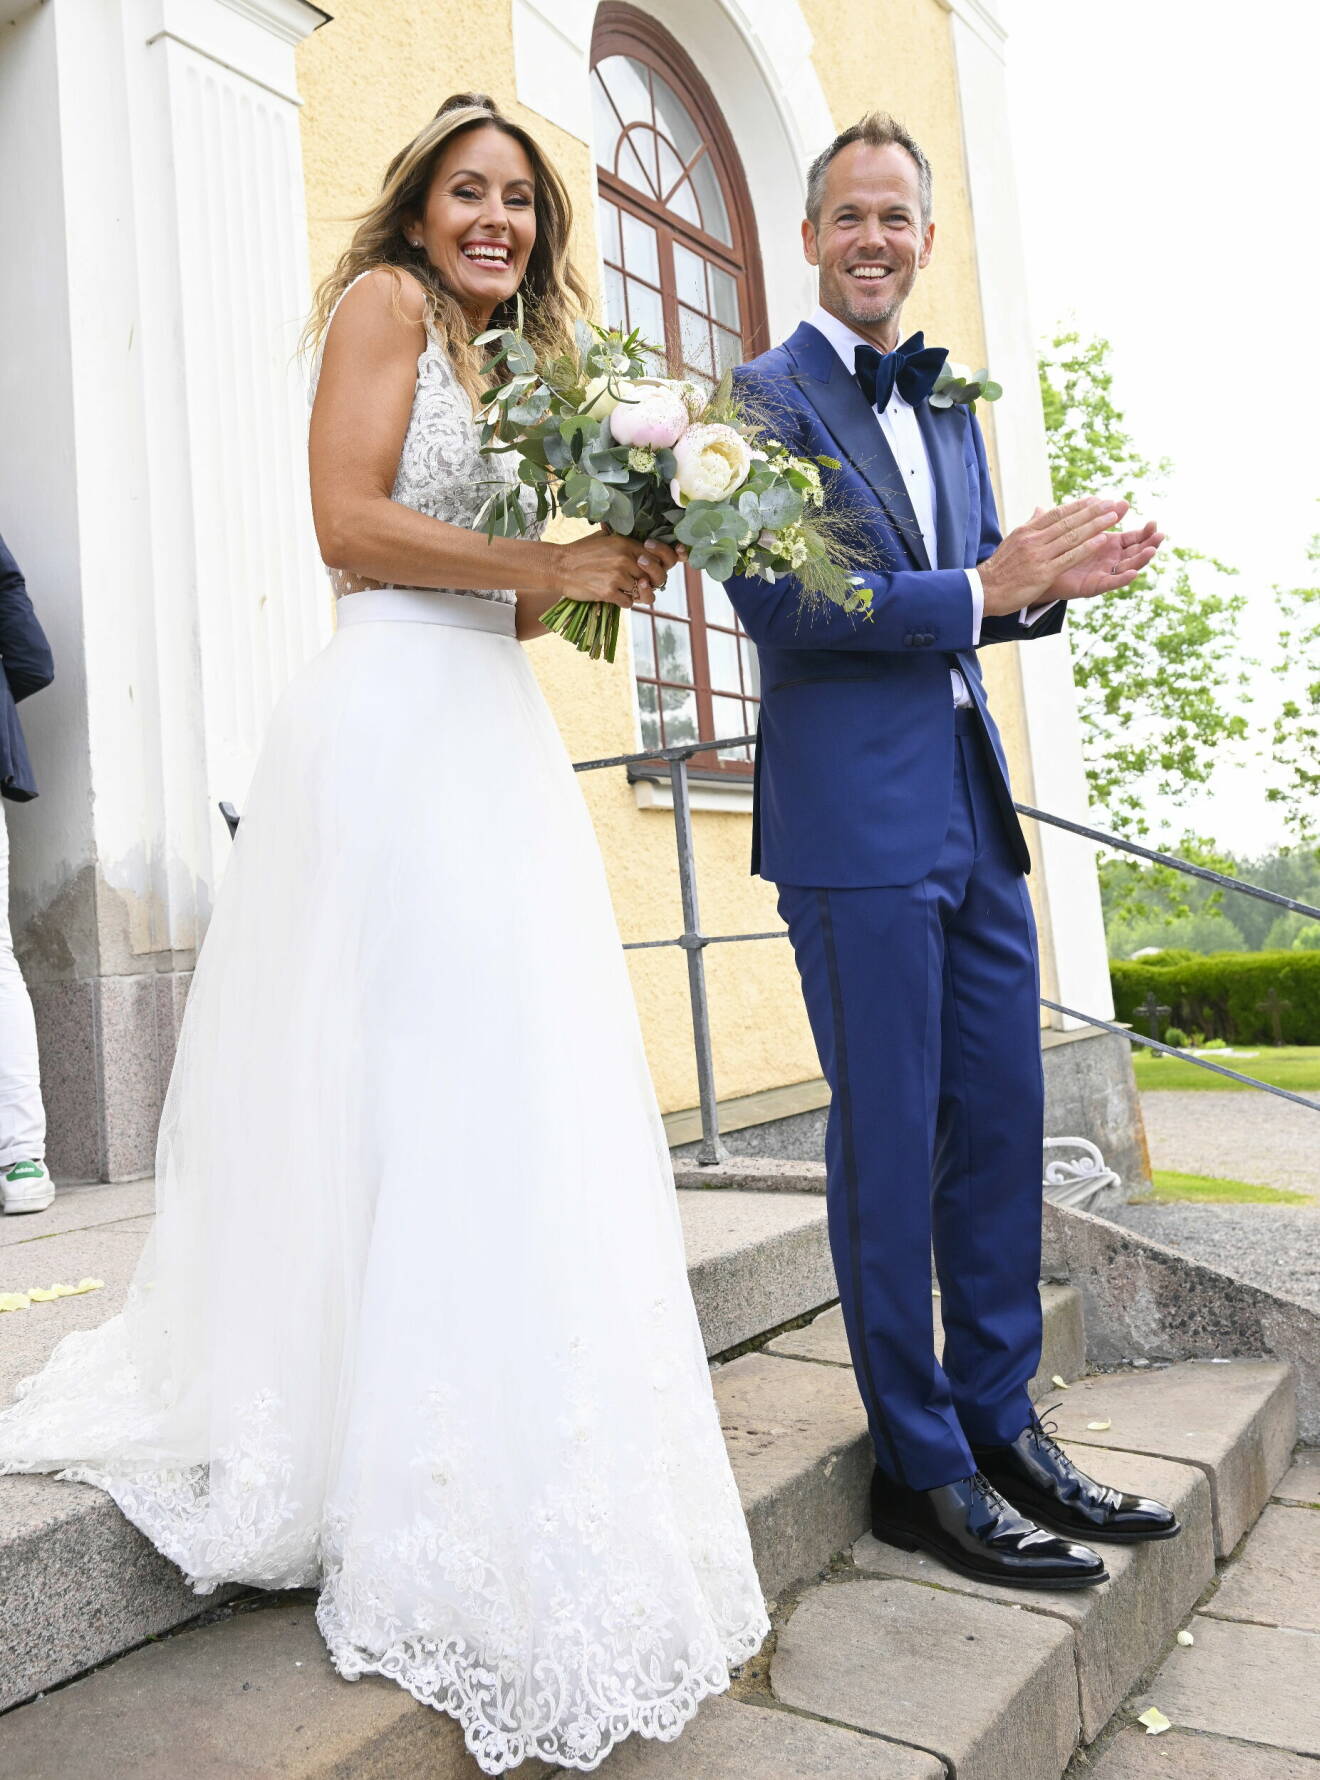 Bröllopet skedde i Väddö kyrka i Norrtälje kommun.